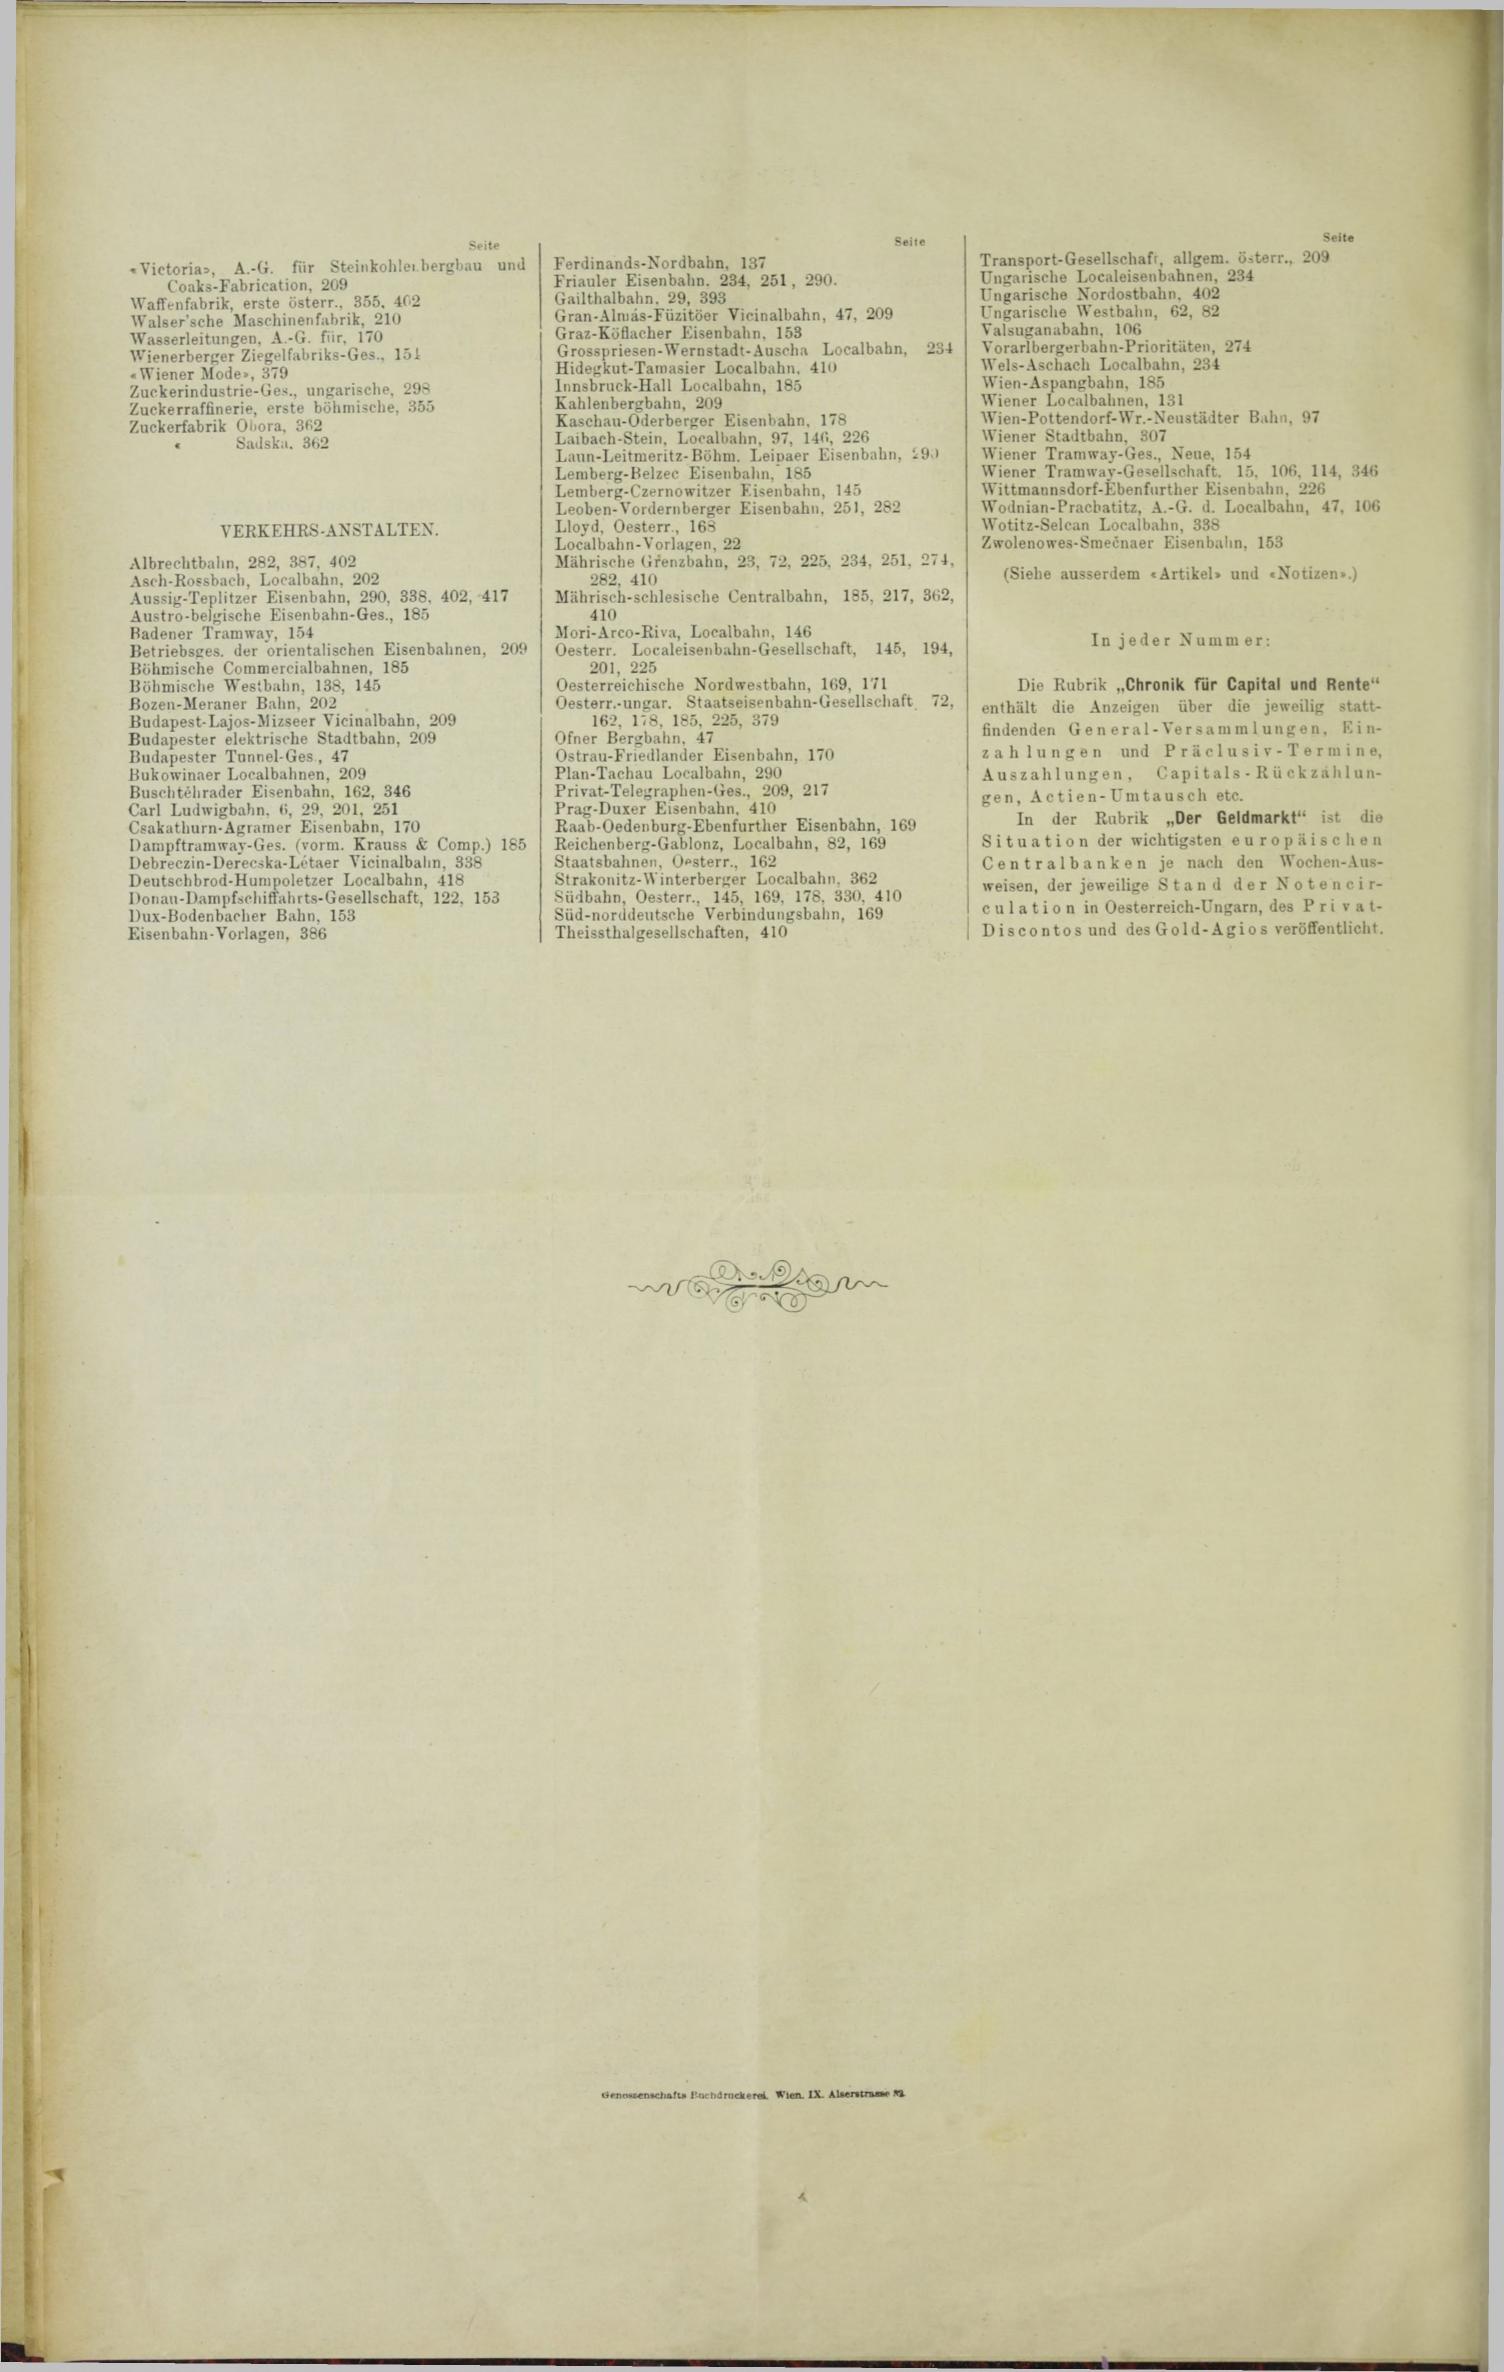 Der Tresor 06.07.1893 - Seite 12